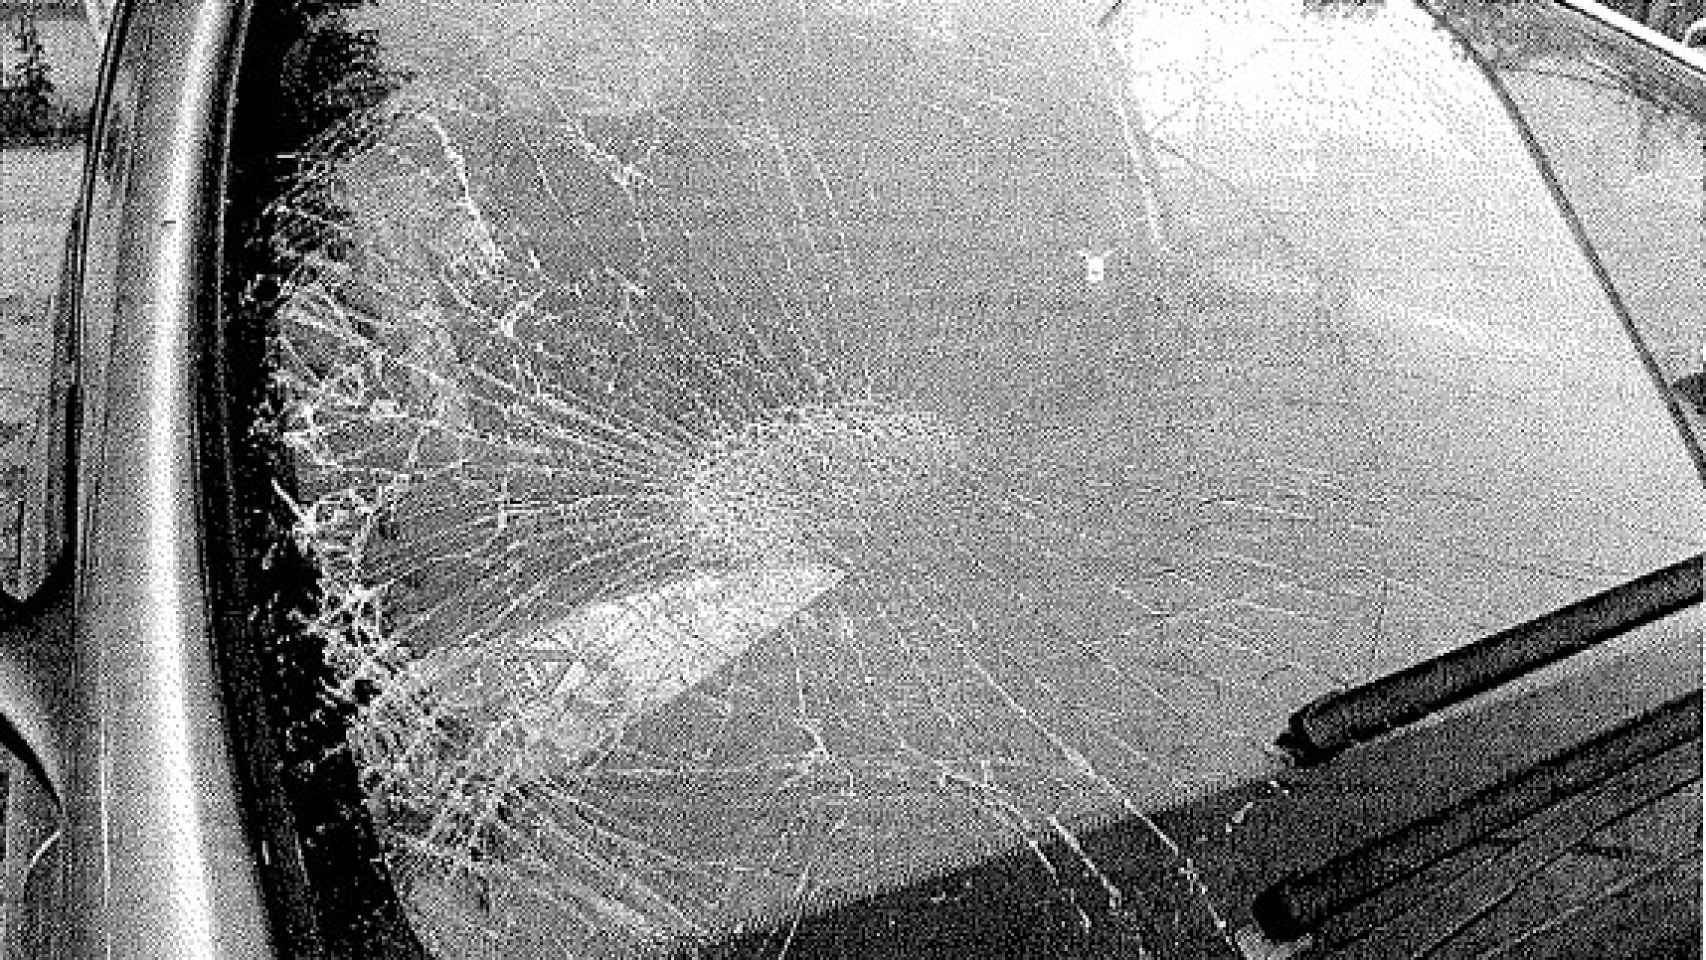 El cristal destrozado de la luna delantera del Citroën Xsara que conducía el guardia civil retirado, el sábado 2 de julio.